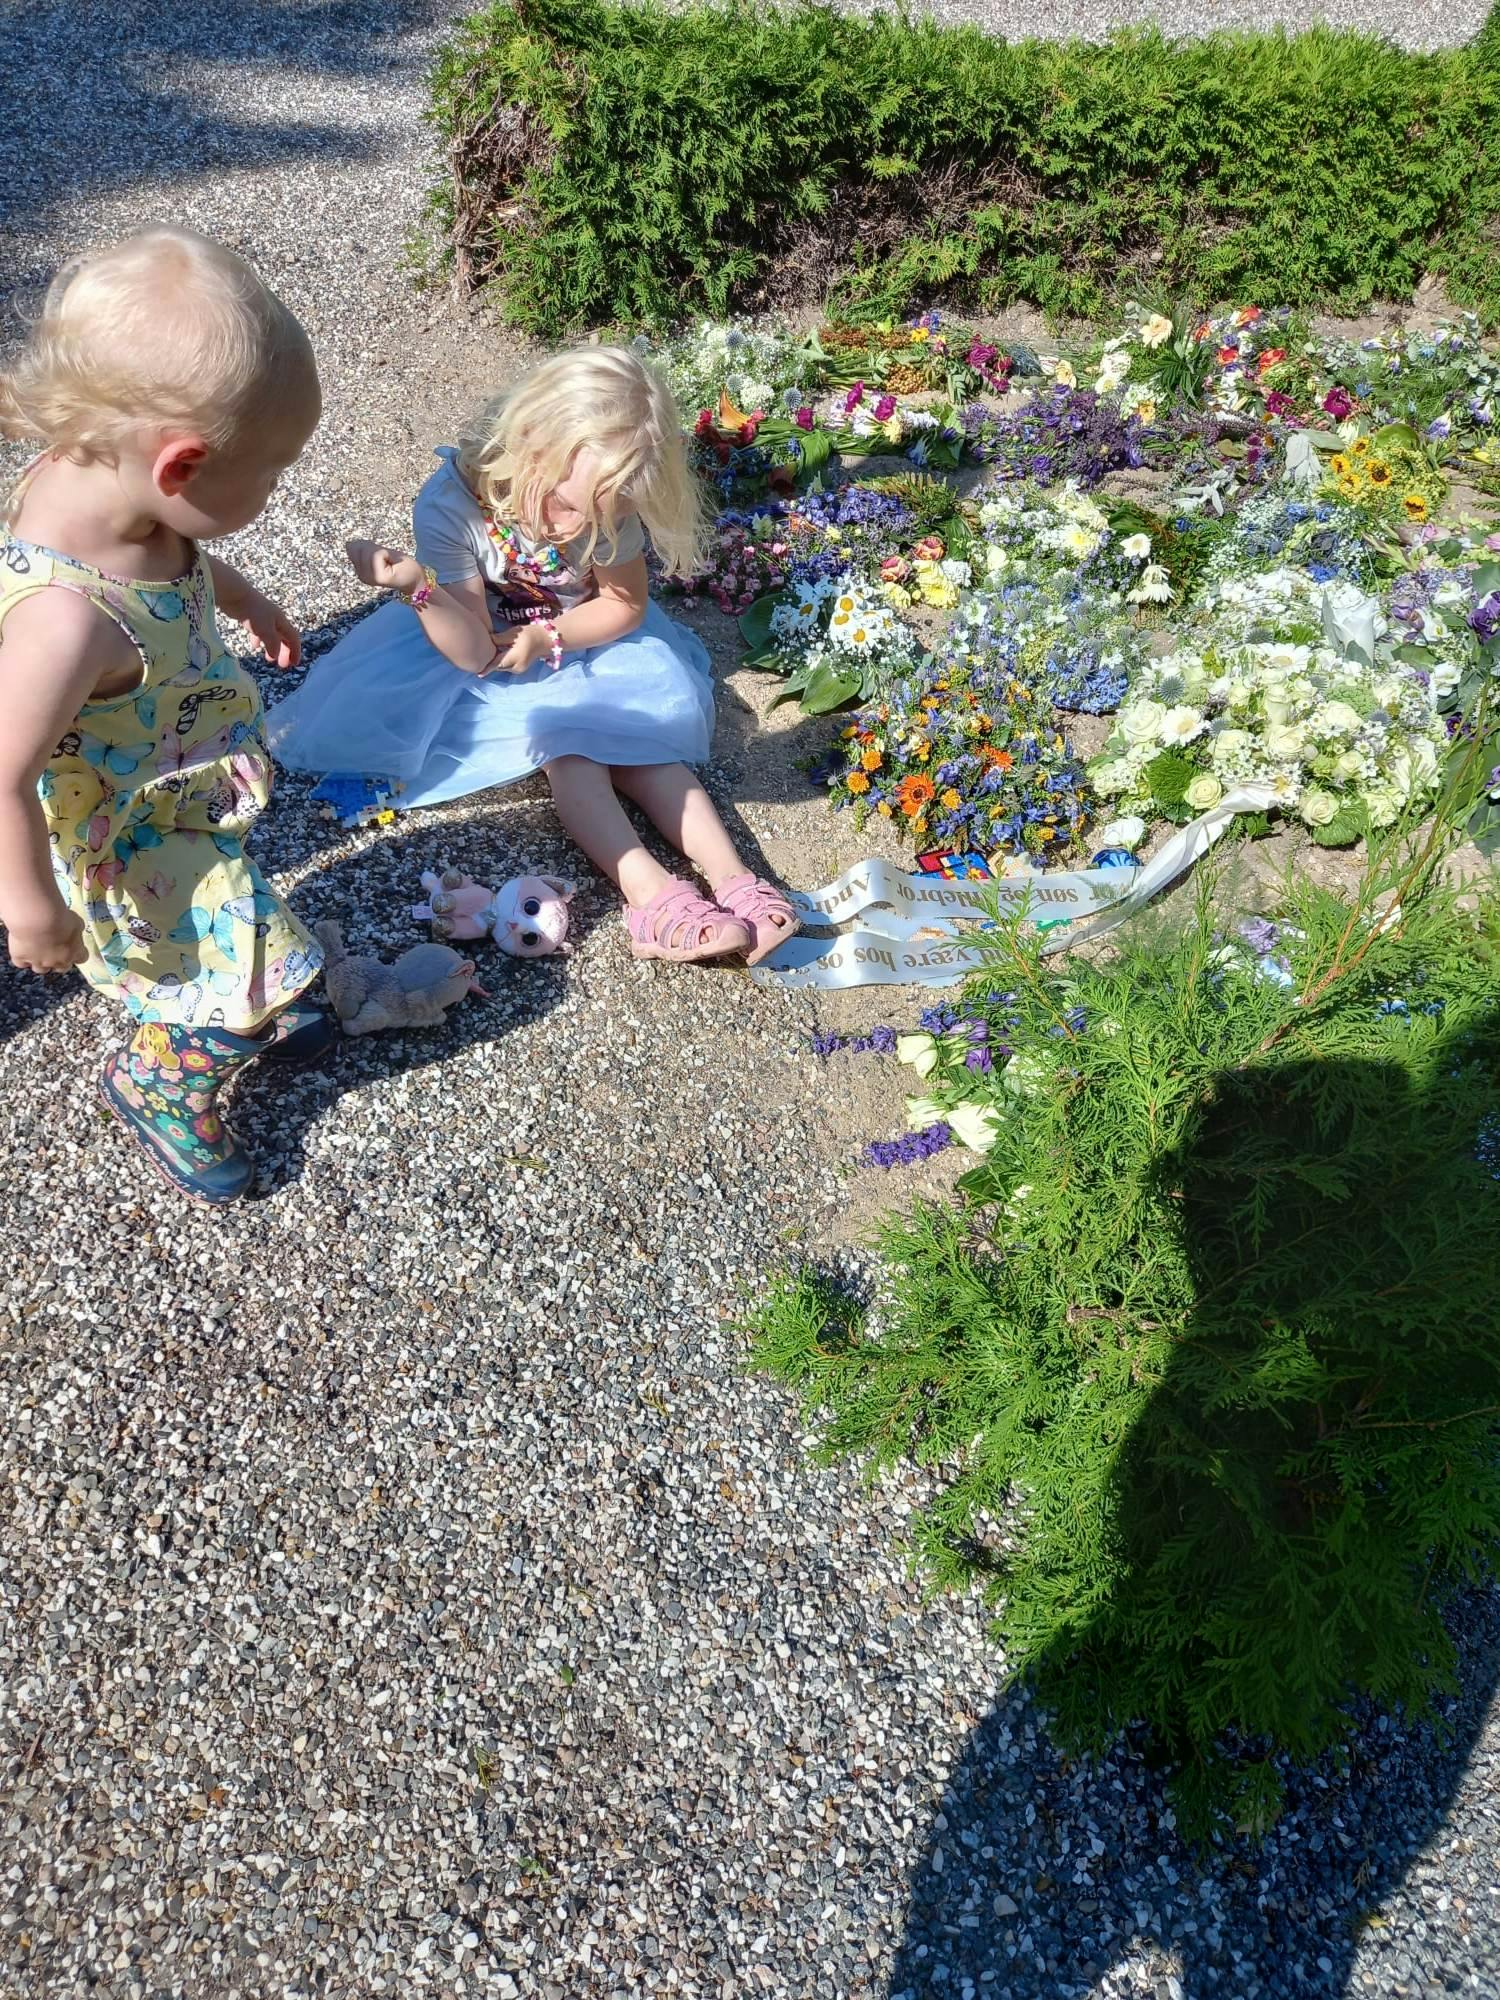 Pigerne besøger blomsterhavet efter Andreas' begravelse.&nbsp;
